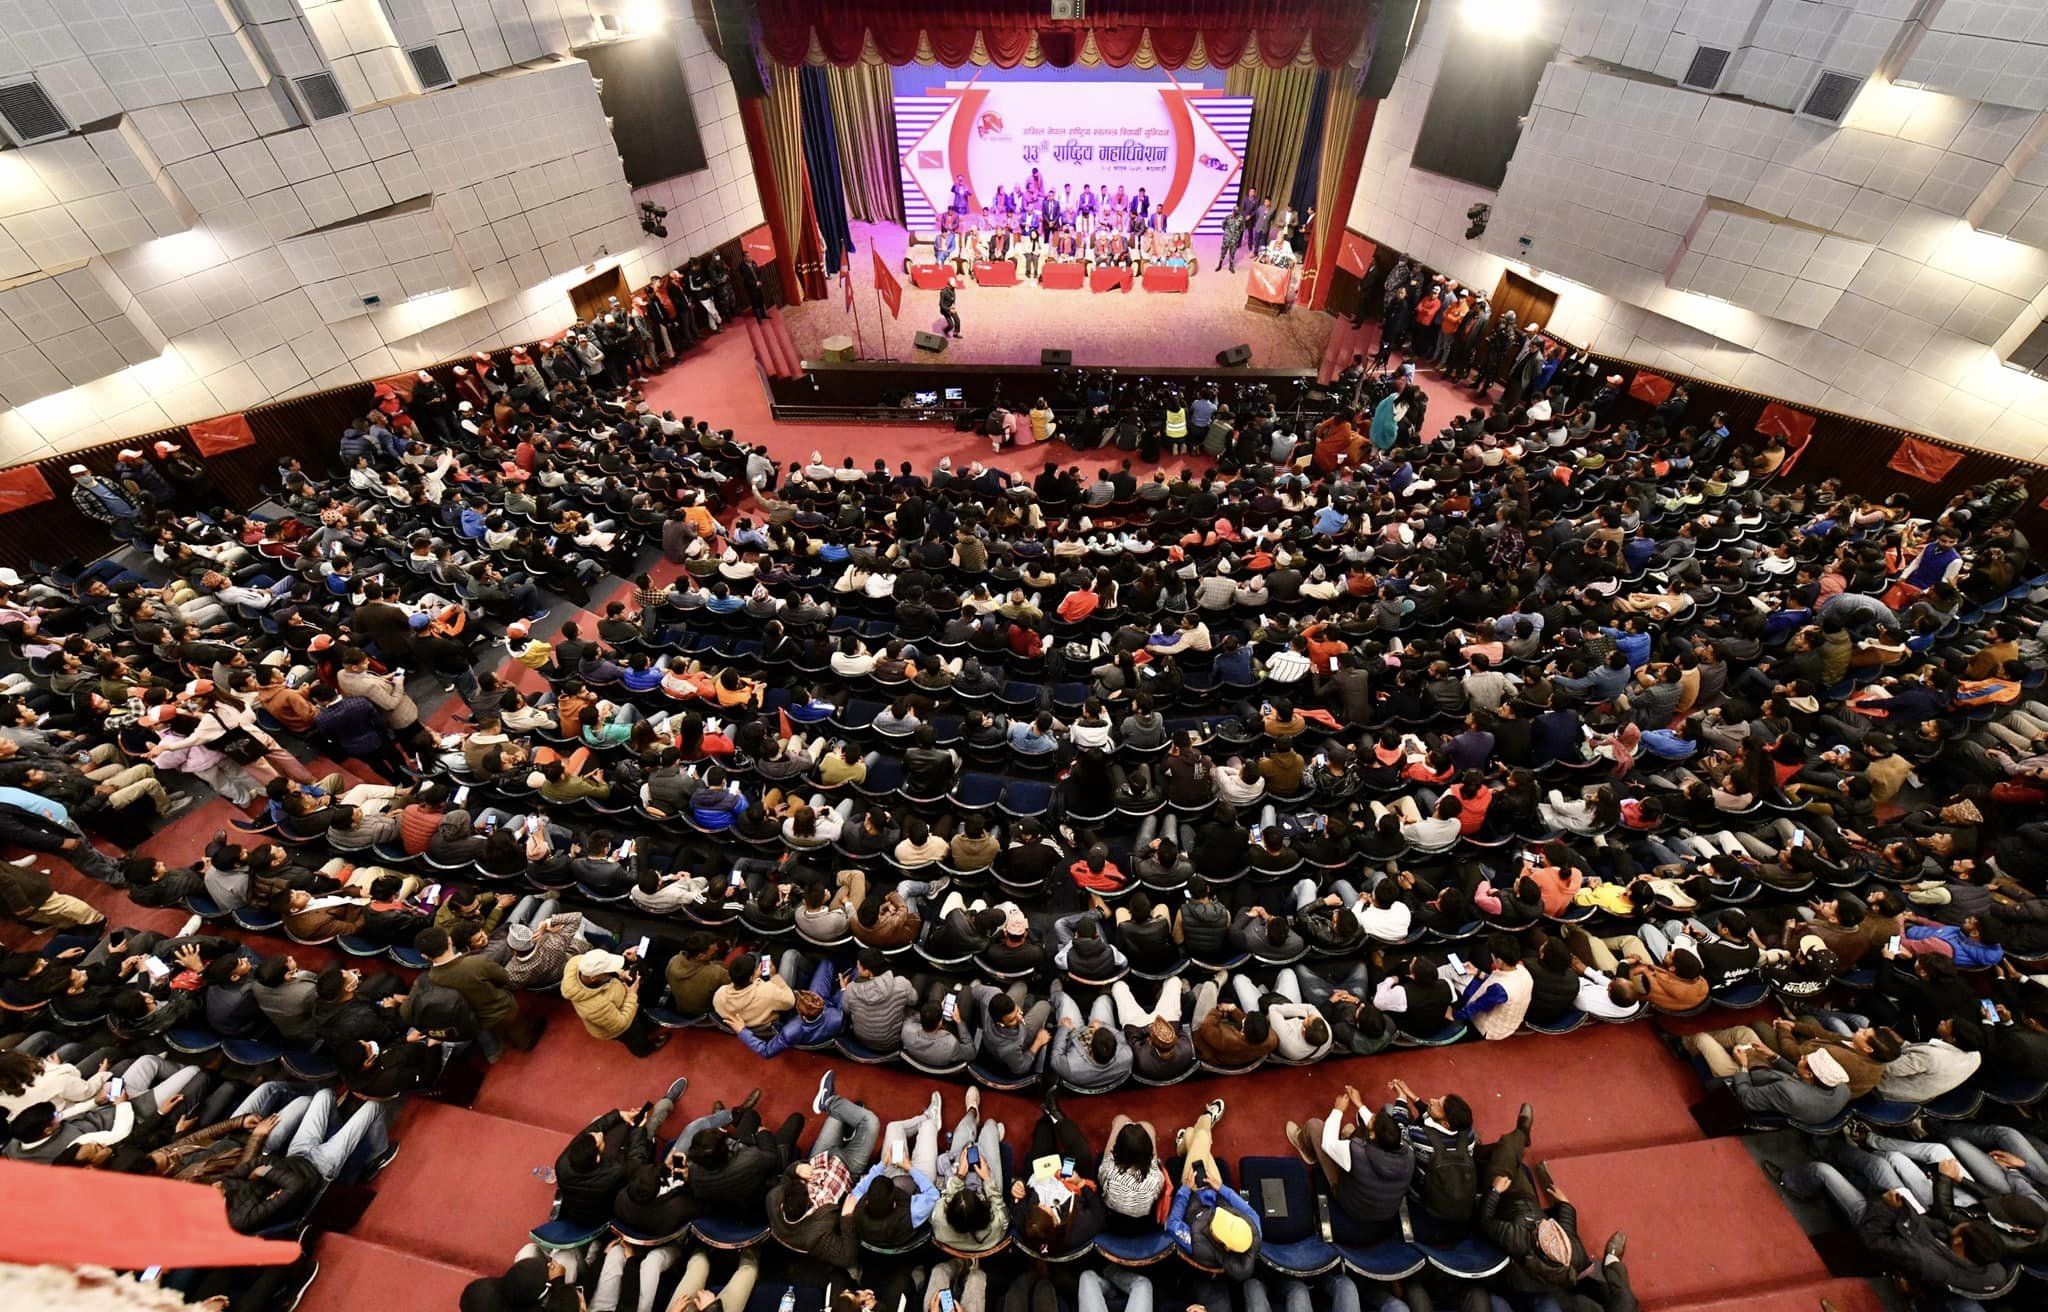 अनेरास्ववियुको २३ औं राष्ट्रिय महाधिवेशन: सहमतिमा पदाधिकारी चयन, सहमति नभए आजै मतदान